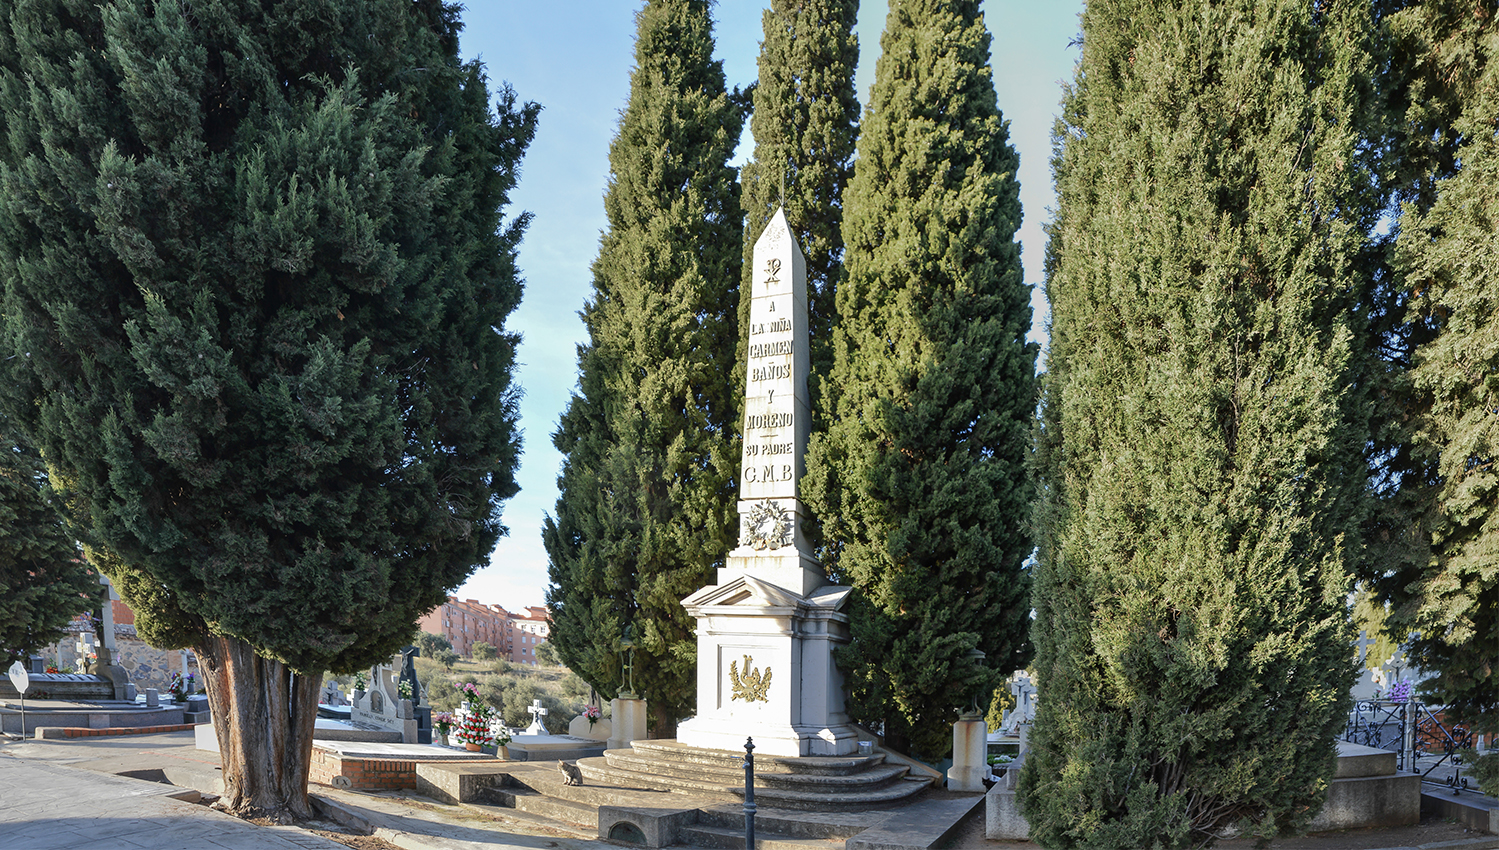 Mausoleo de Carmen Baños, hija de Gabriel Melitón Baños, en el Cementerio Municipal de Toledo. Fotografía: Jose María Gutiérrez Arias. Sección Vivienda, Consorcio de la Ciudad de Toledo. Año 2018.